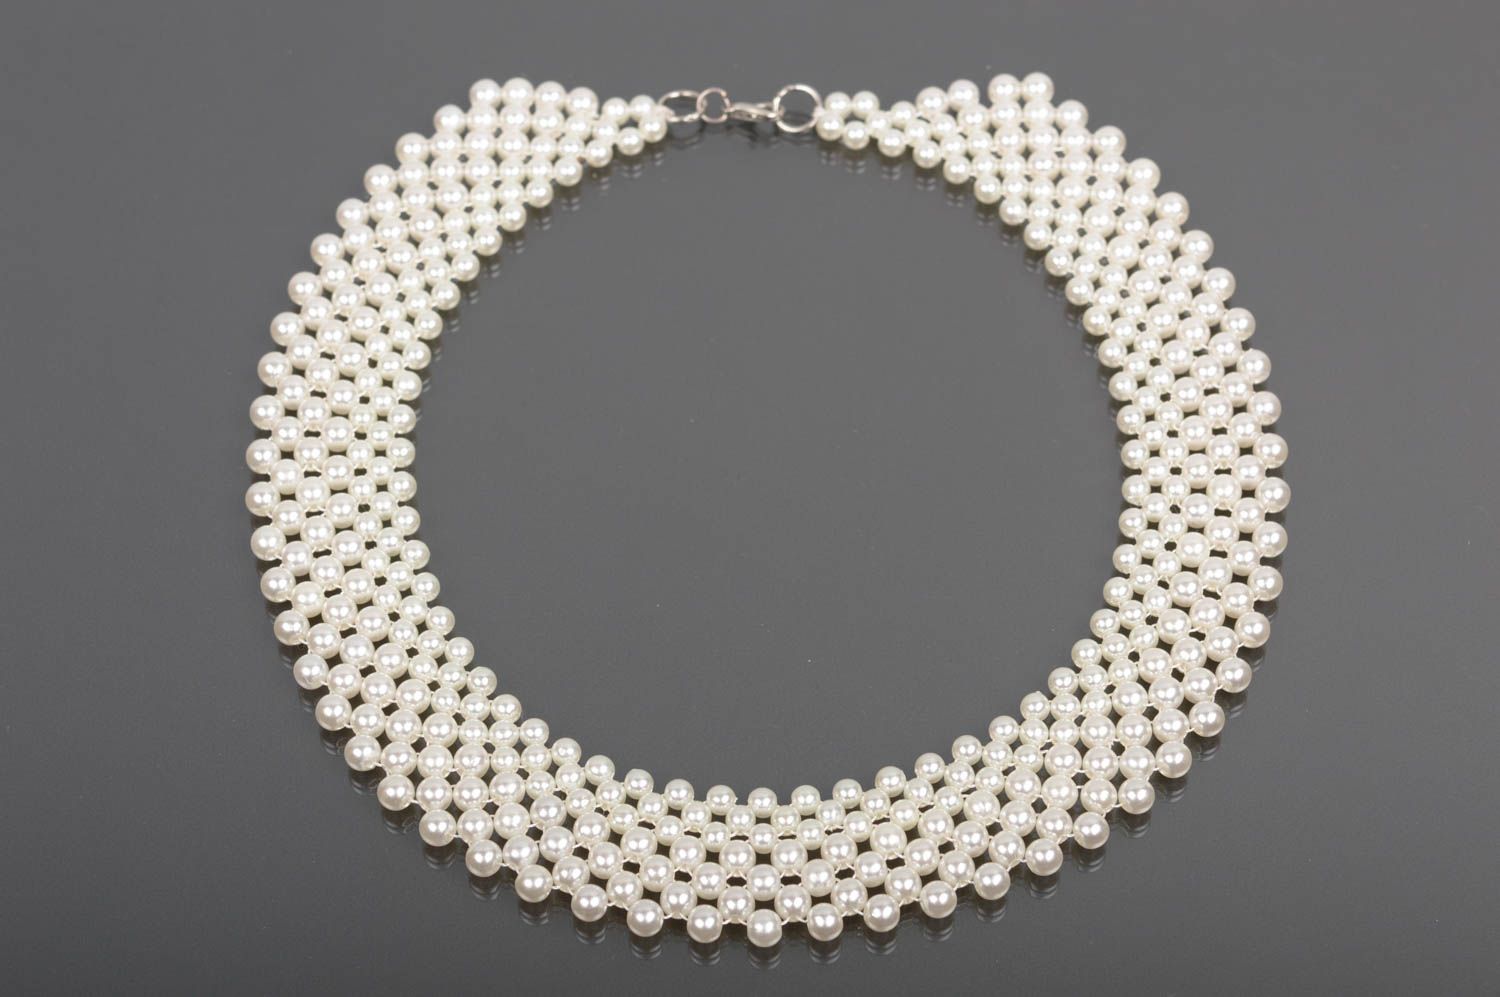 Handmade white beaded necklace designer stylish accessory unusual necklace photo 1